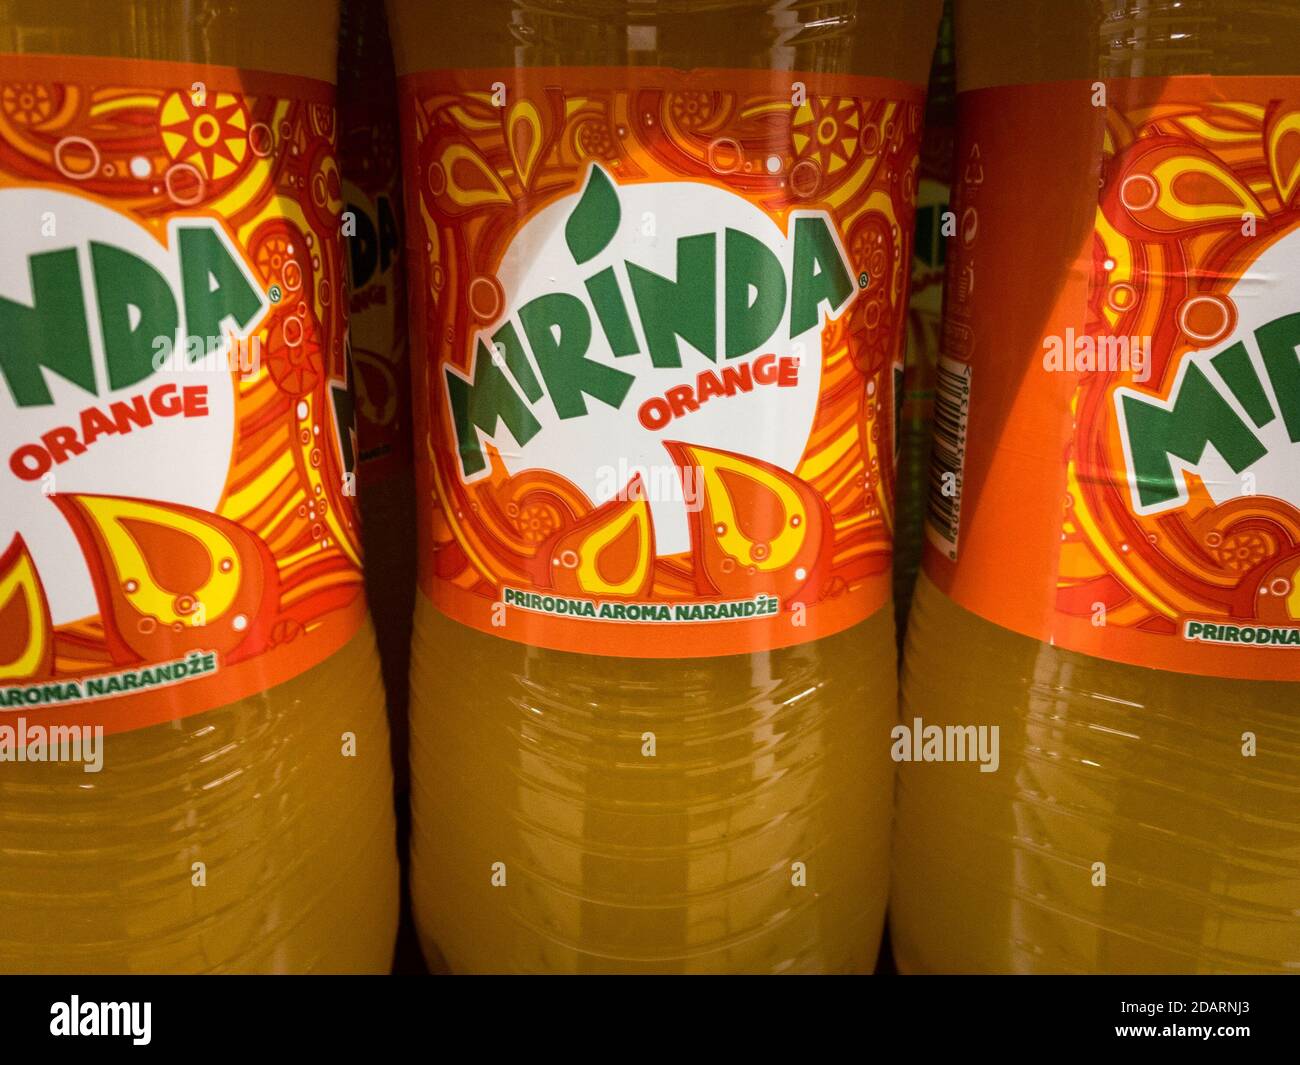 BELGRADO, SERBIA - 12 OTTOBRE 2020: Logo Mirinda Orange sulle bottiglie in vendita a Belgrado. Mirinda è un marchio spagnolo di bevande gassate Foto Stock